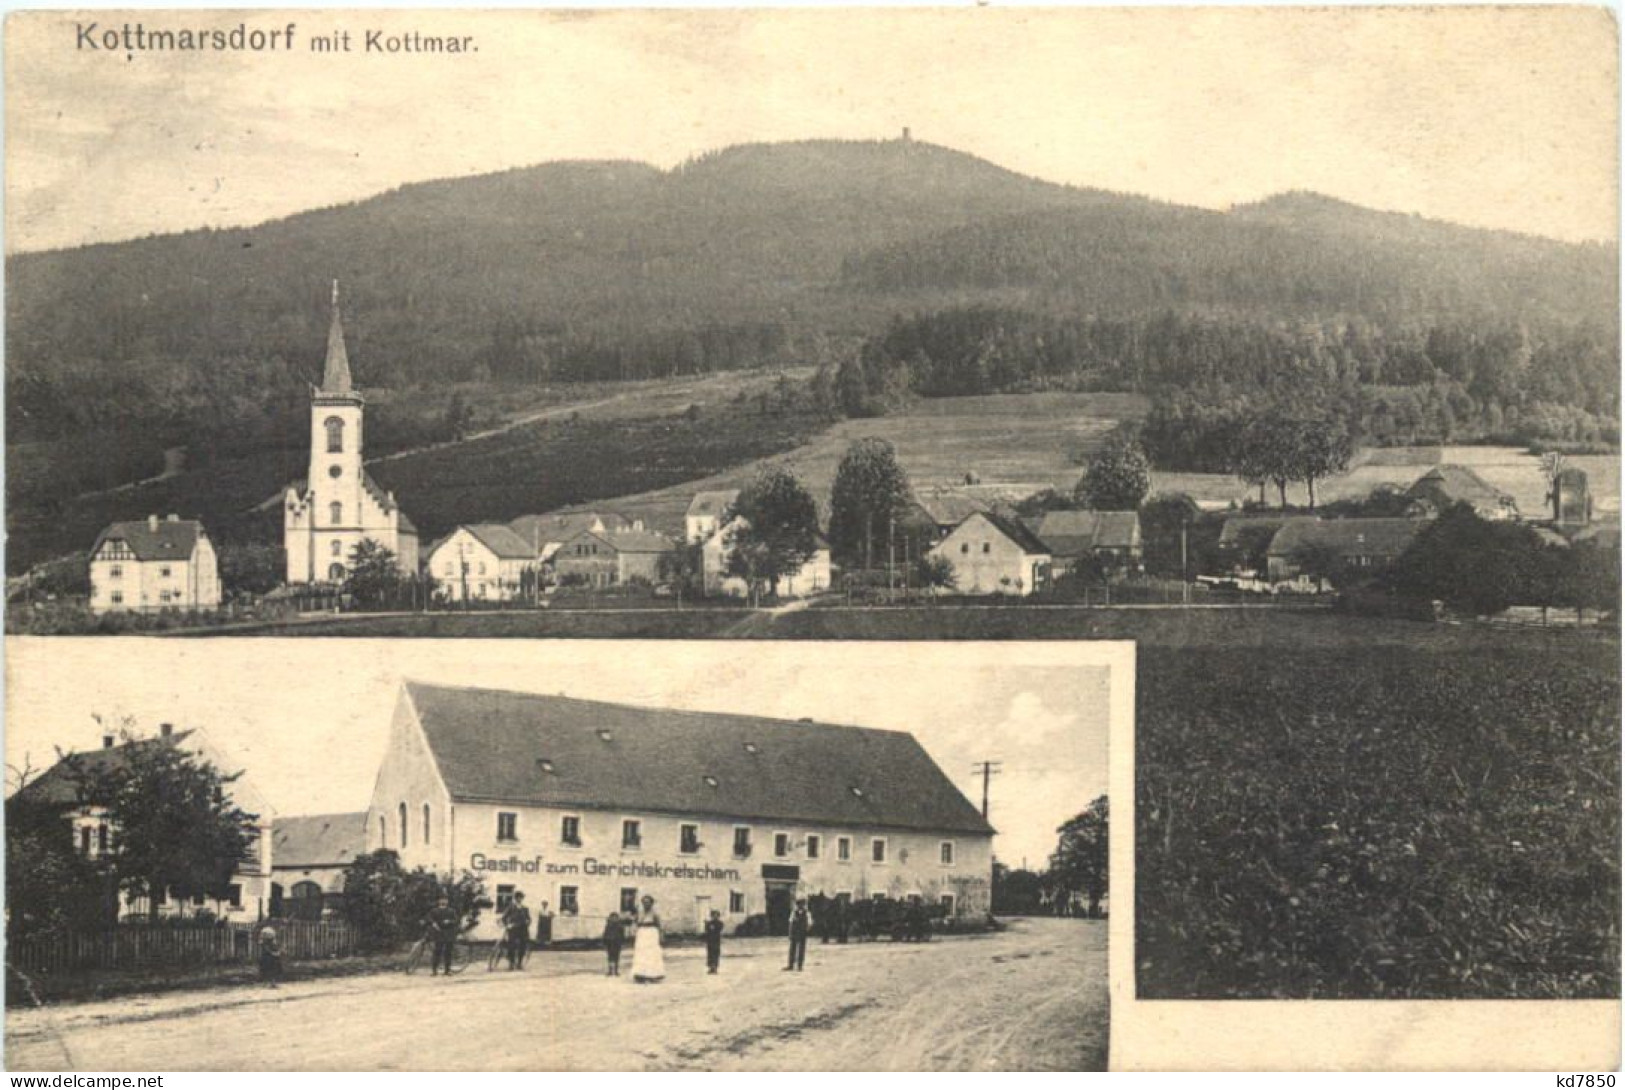 Kottmarsdorf - Gasthof Zum Gerichtskretscham - Goerlitz